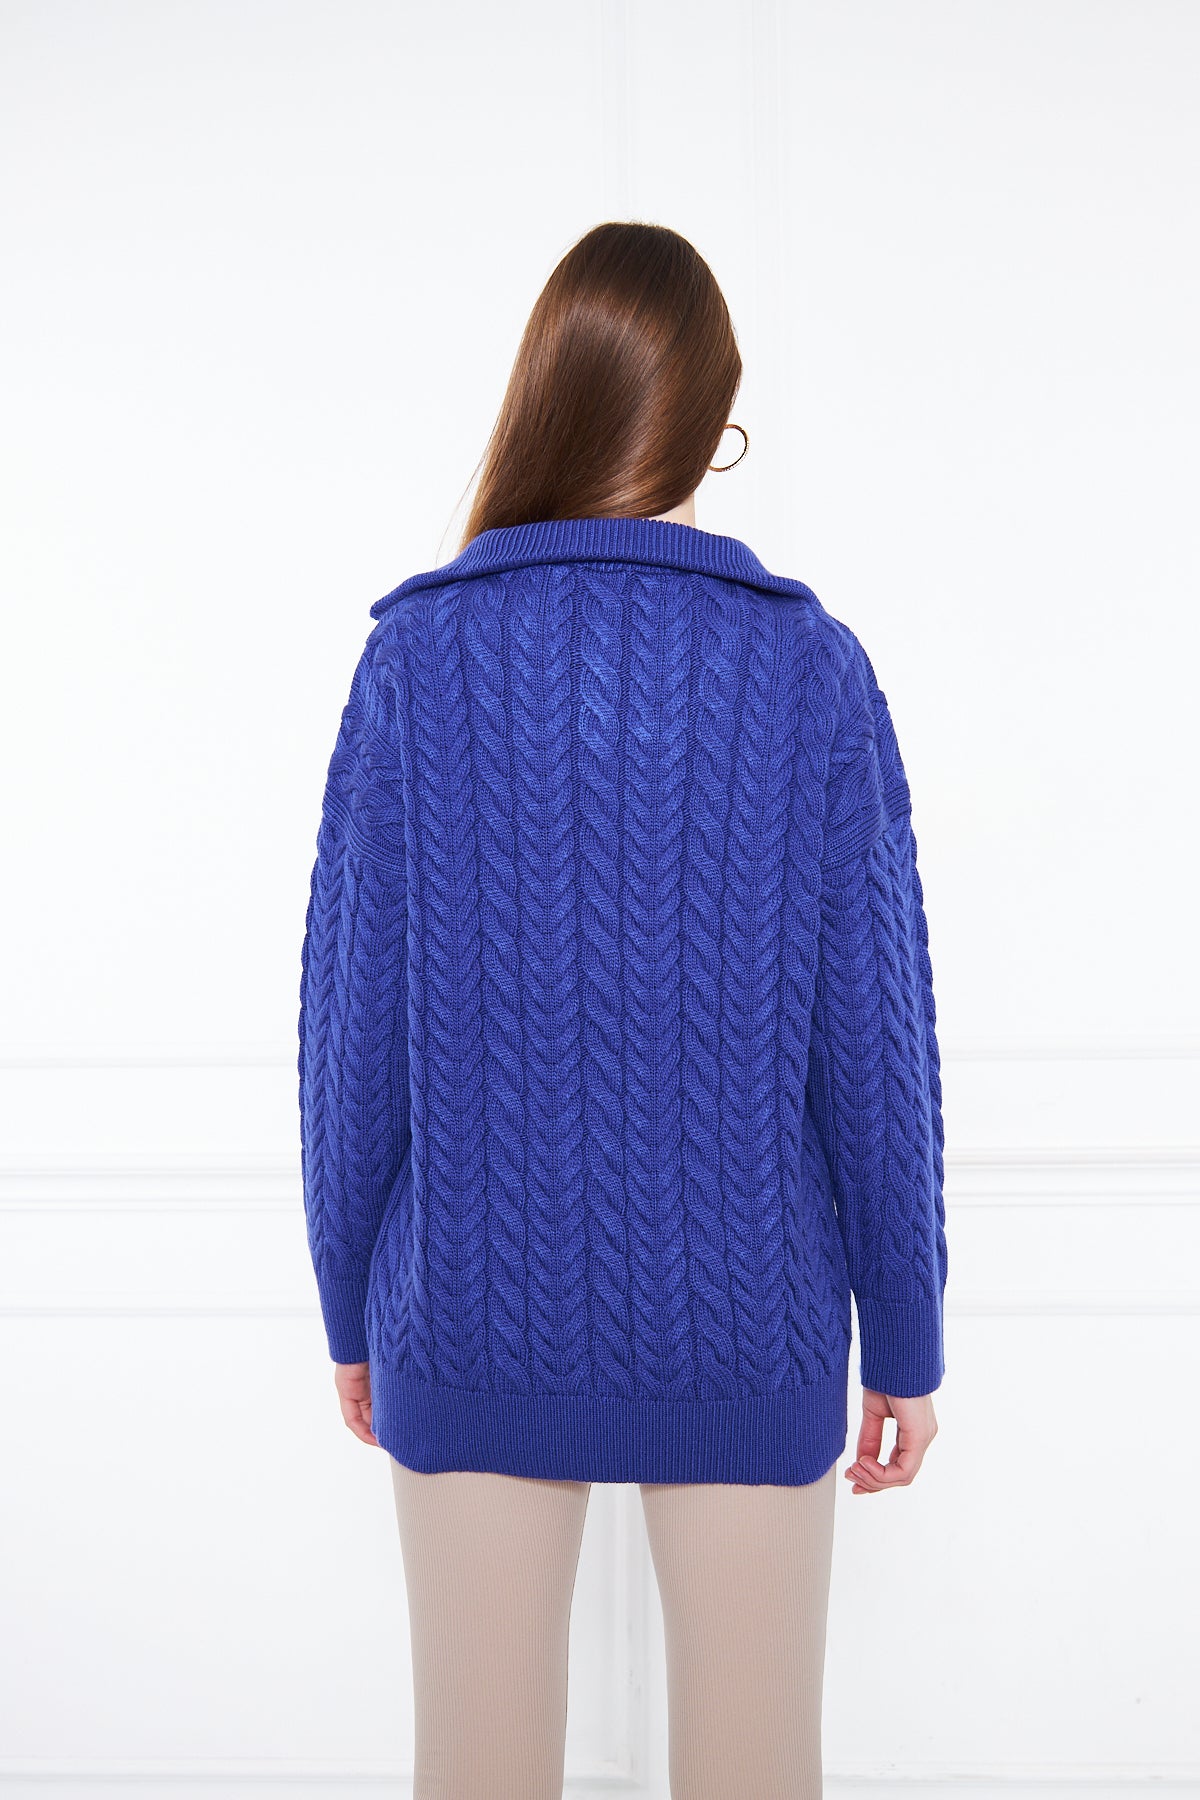 Volia Zipper Cable Sweater